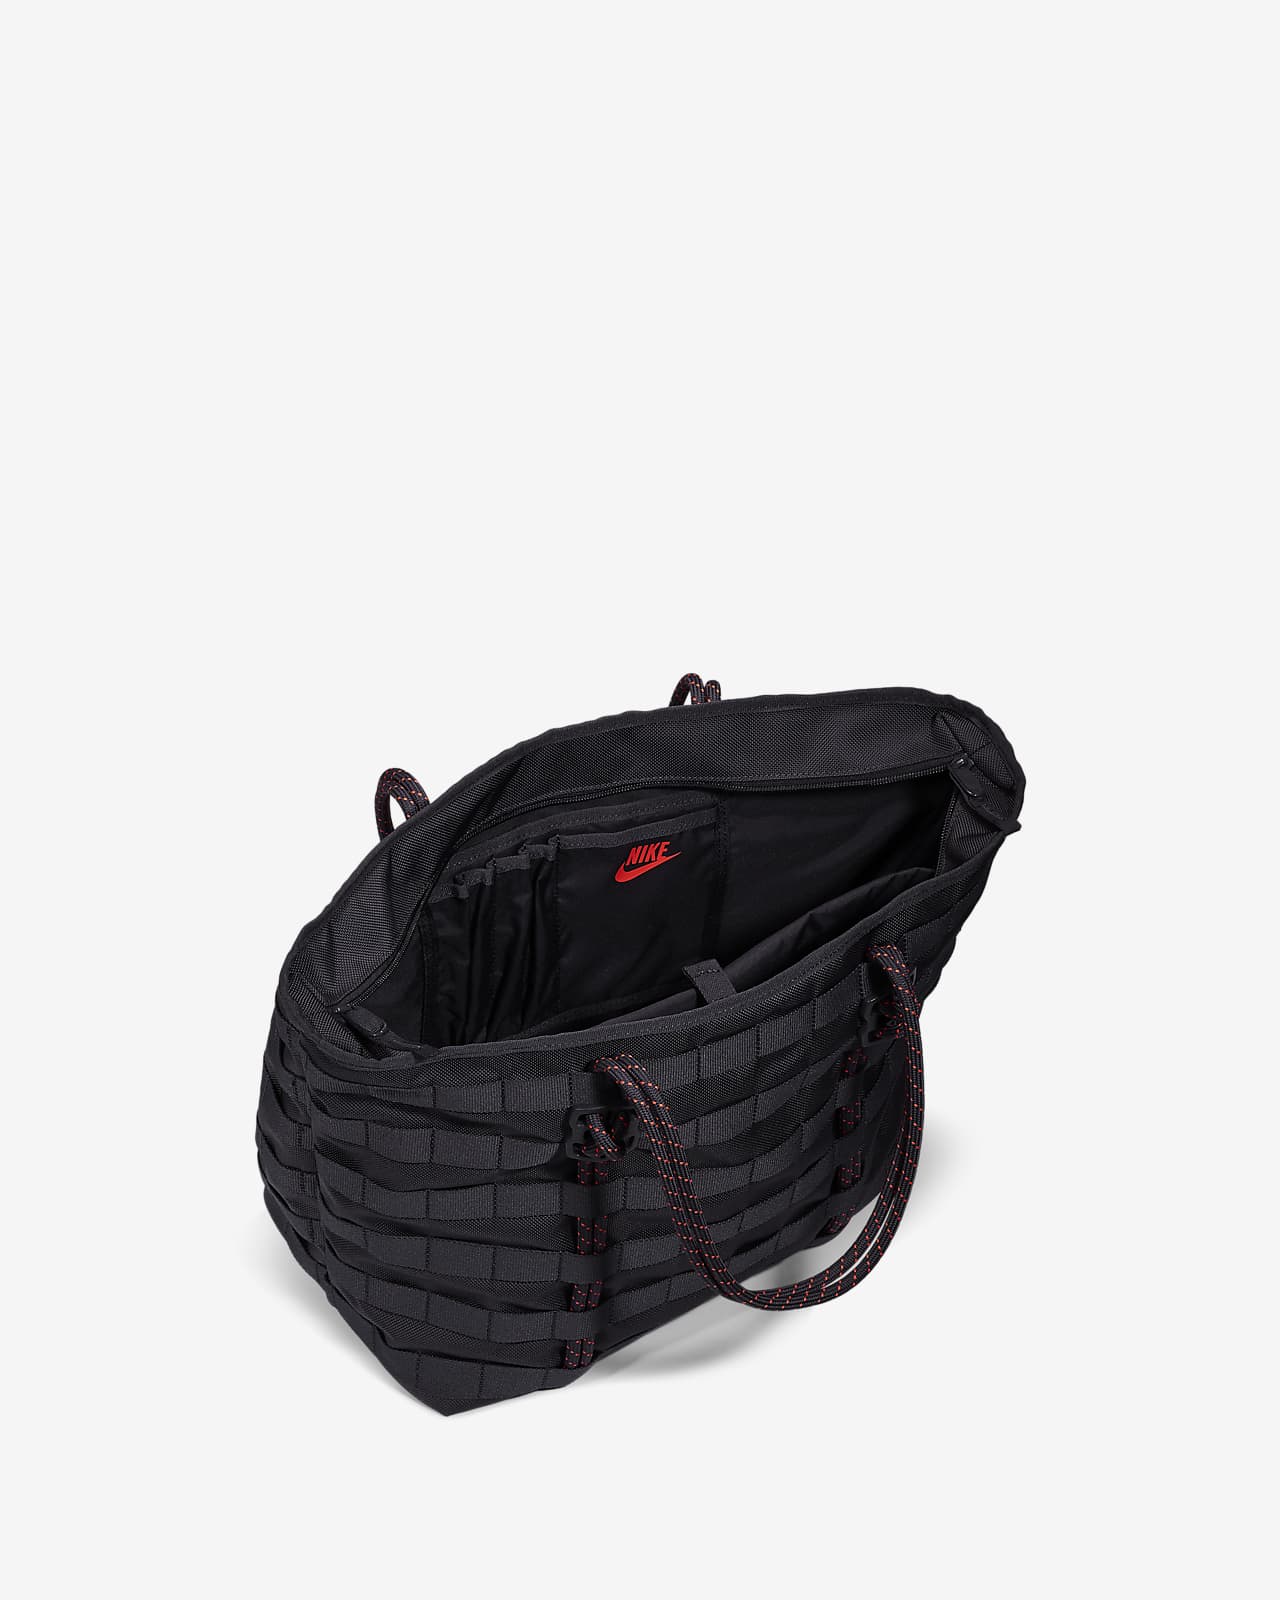 Nike Air Force 1 Tote Bag Black